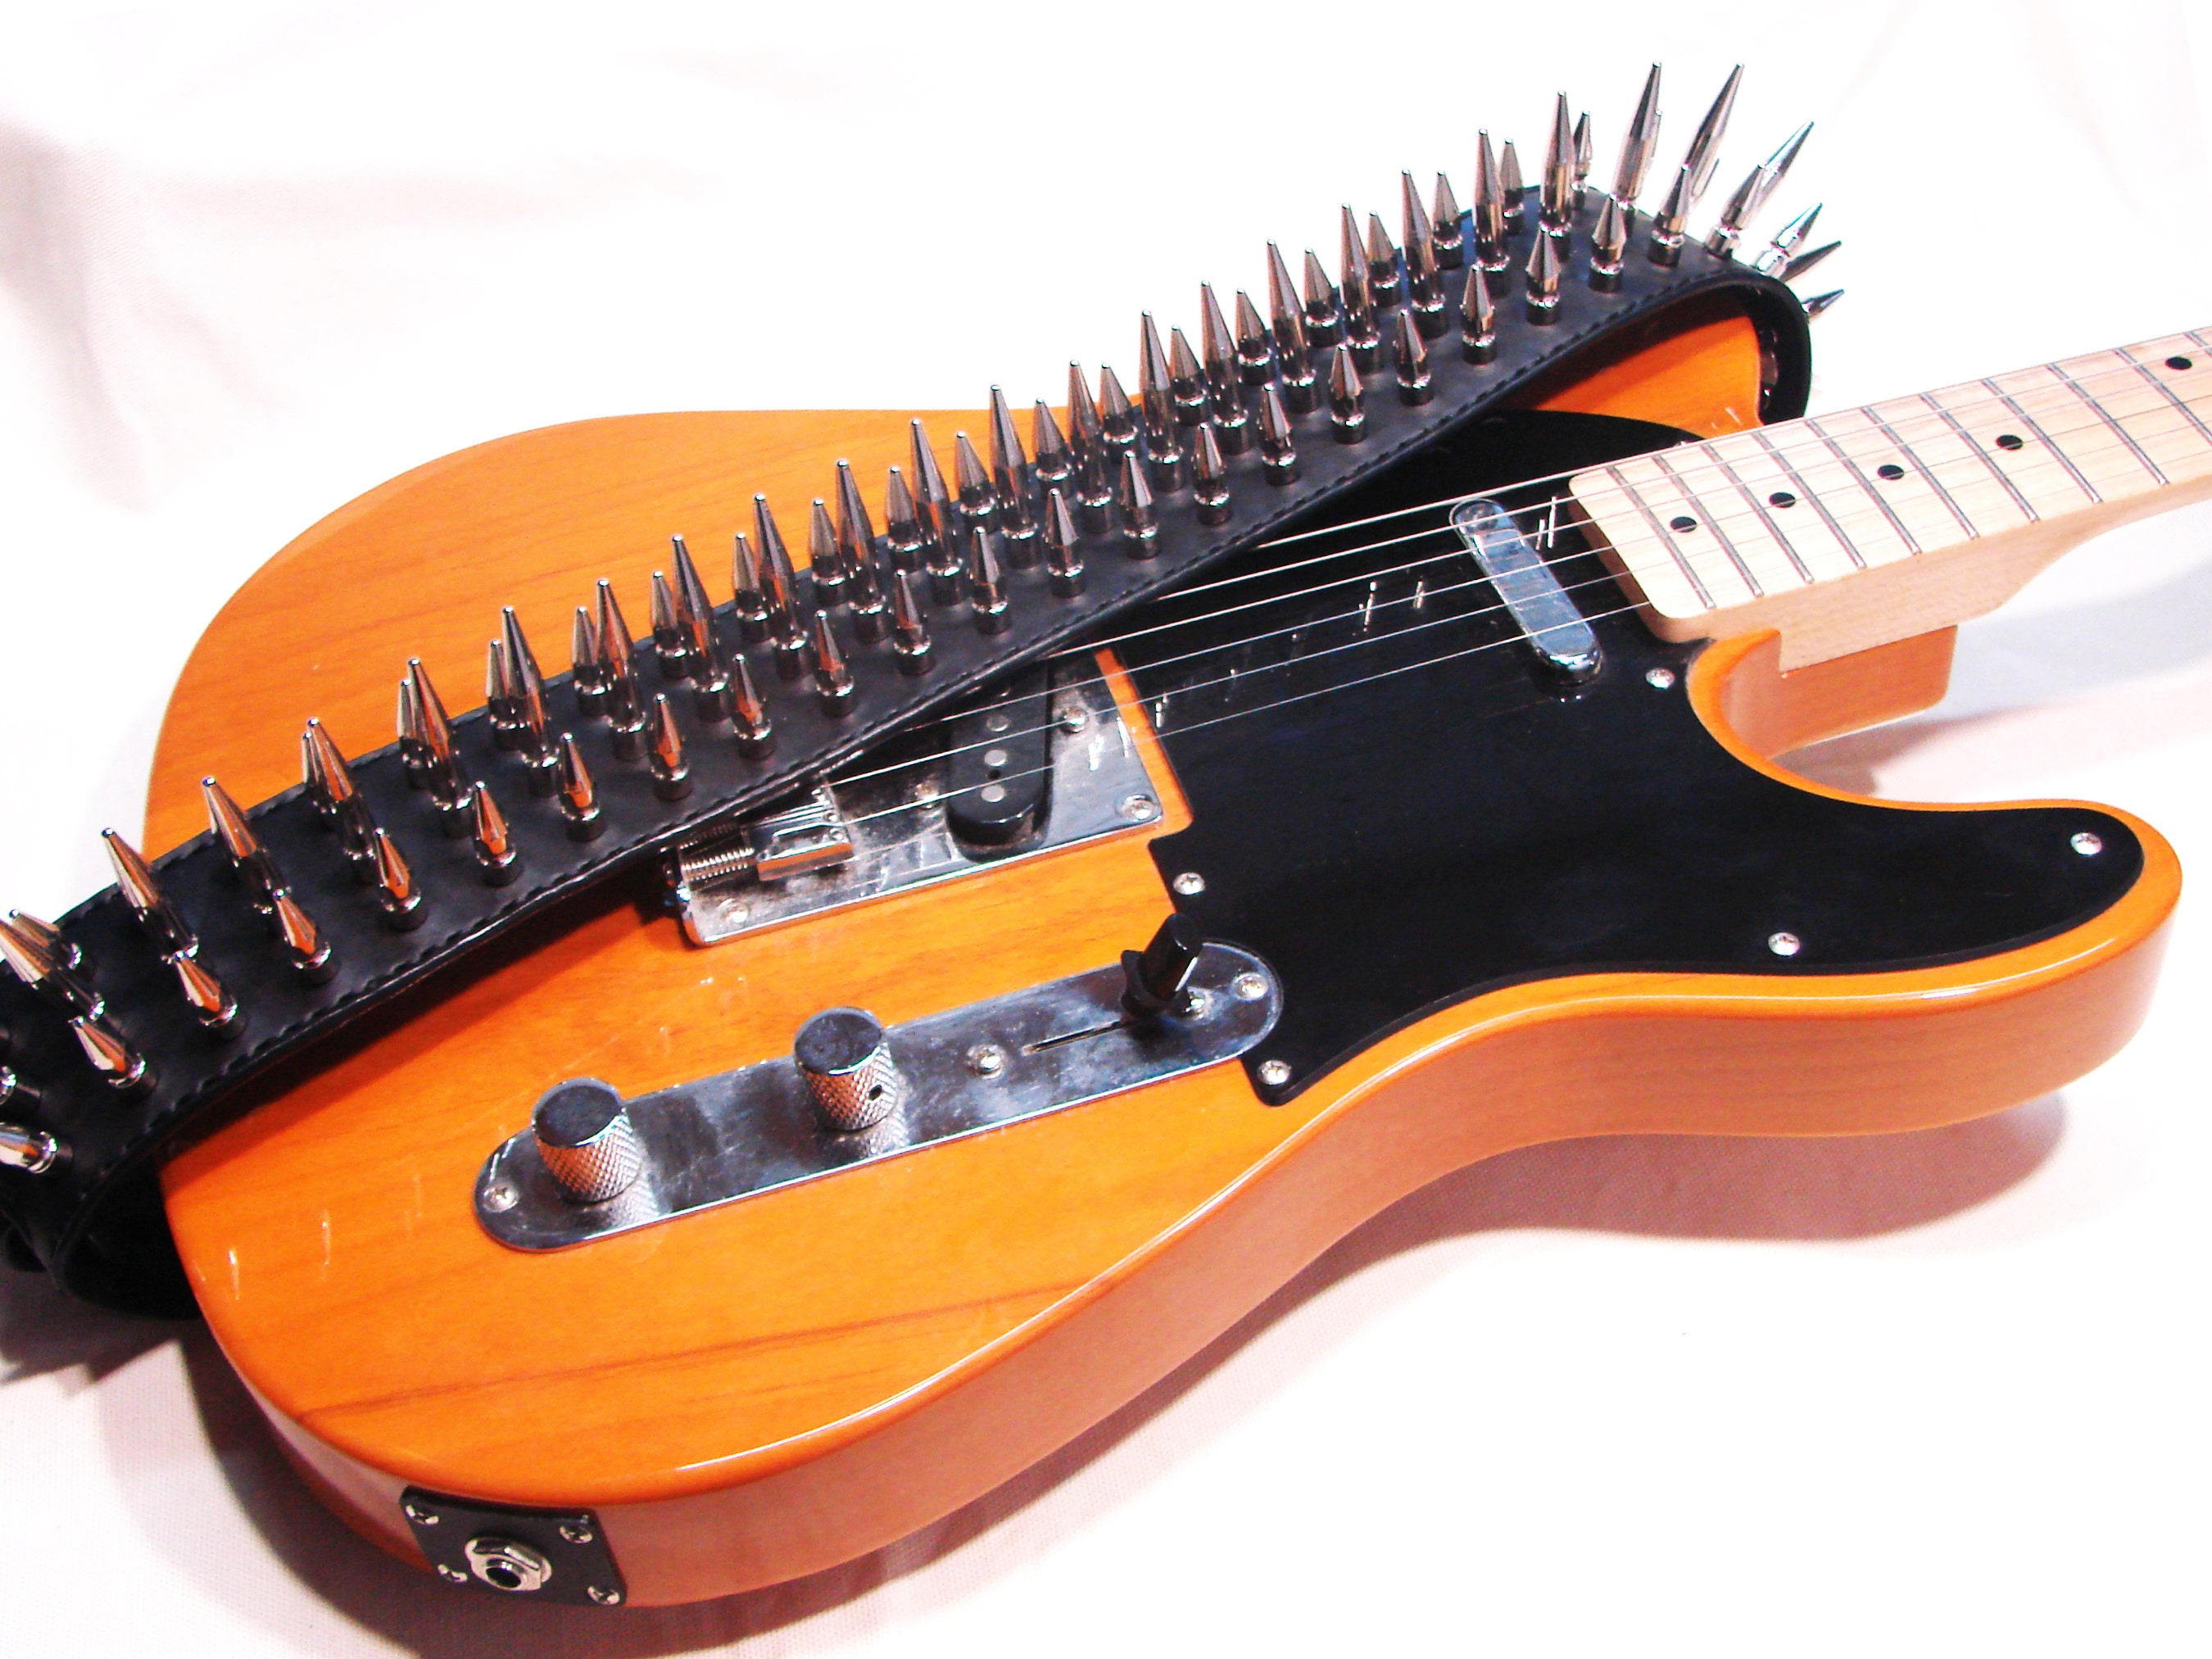 Tabouret guitariste Rock - 61 cm - Shiver - Accessoires guitare